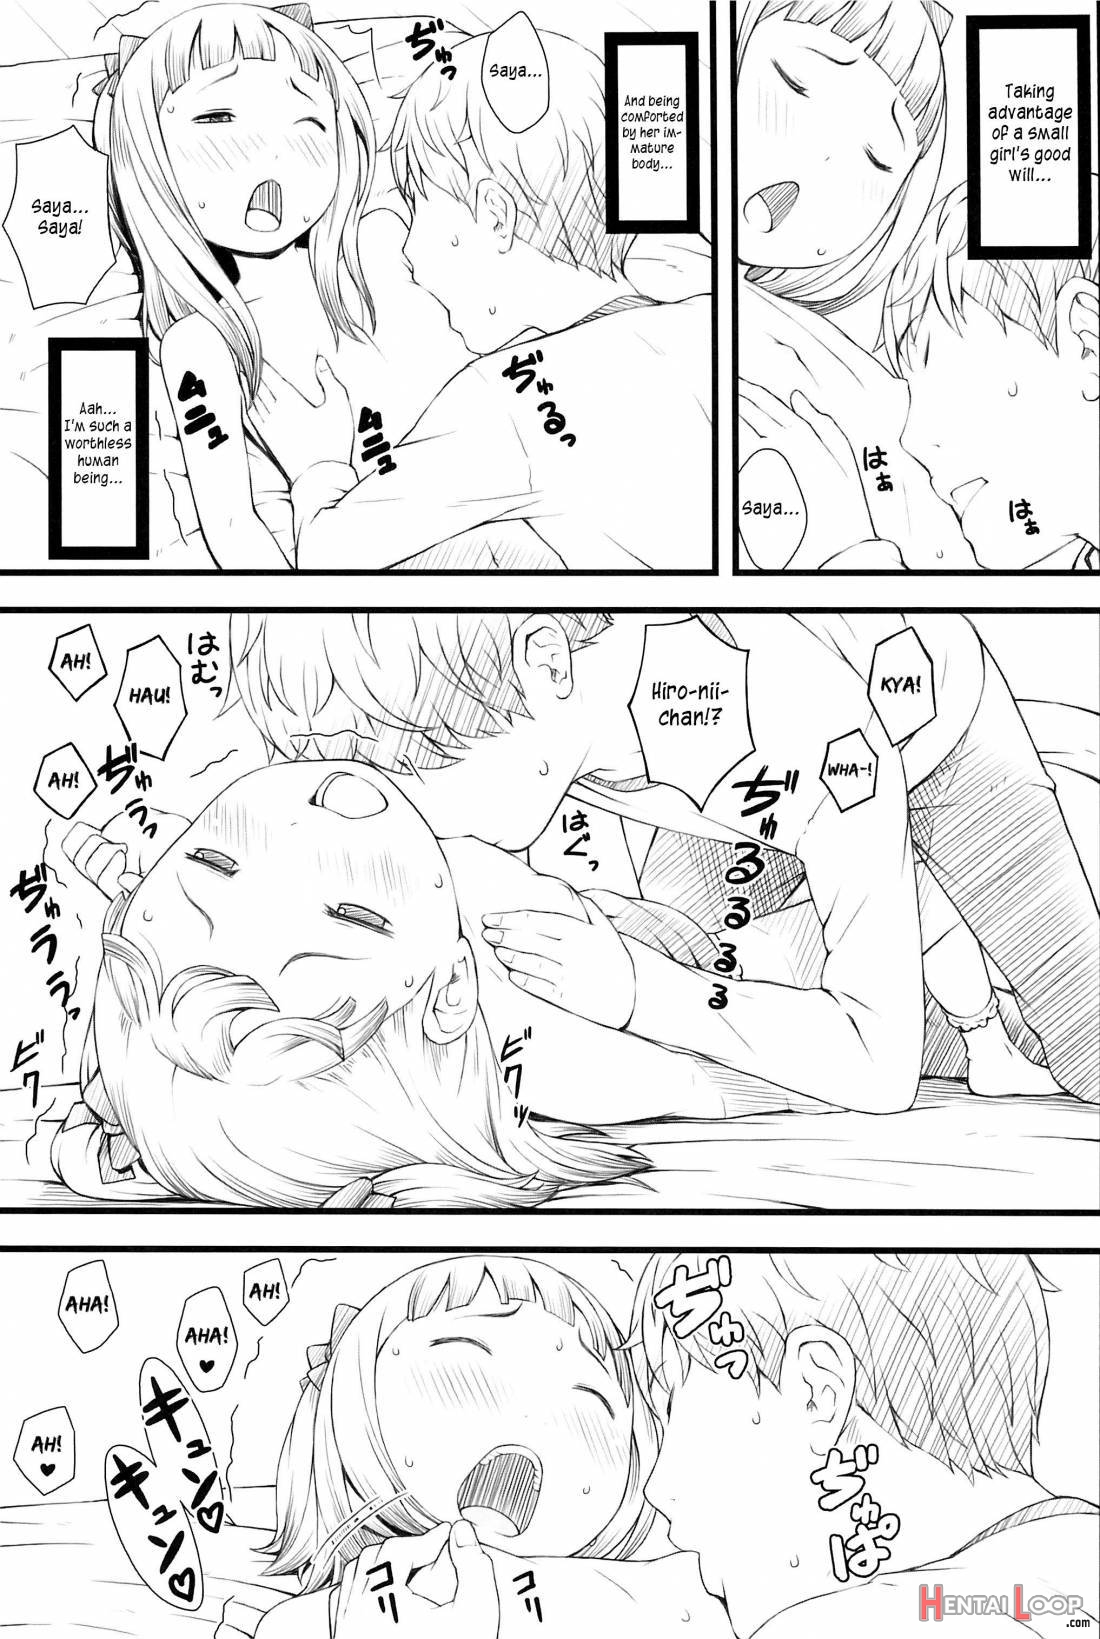 Otomari Saya-chan page 12